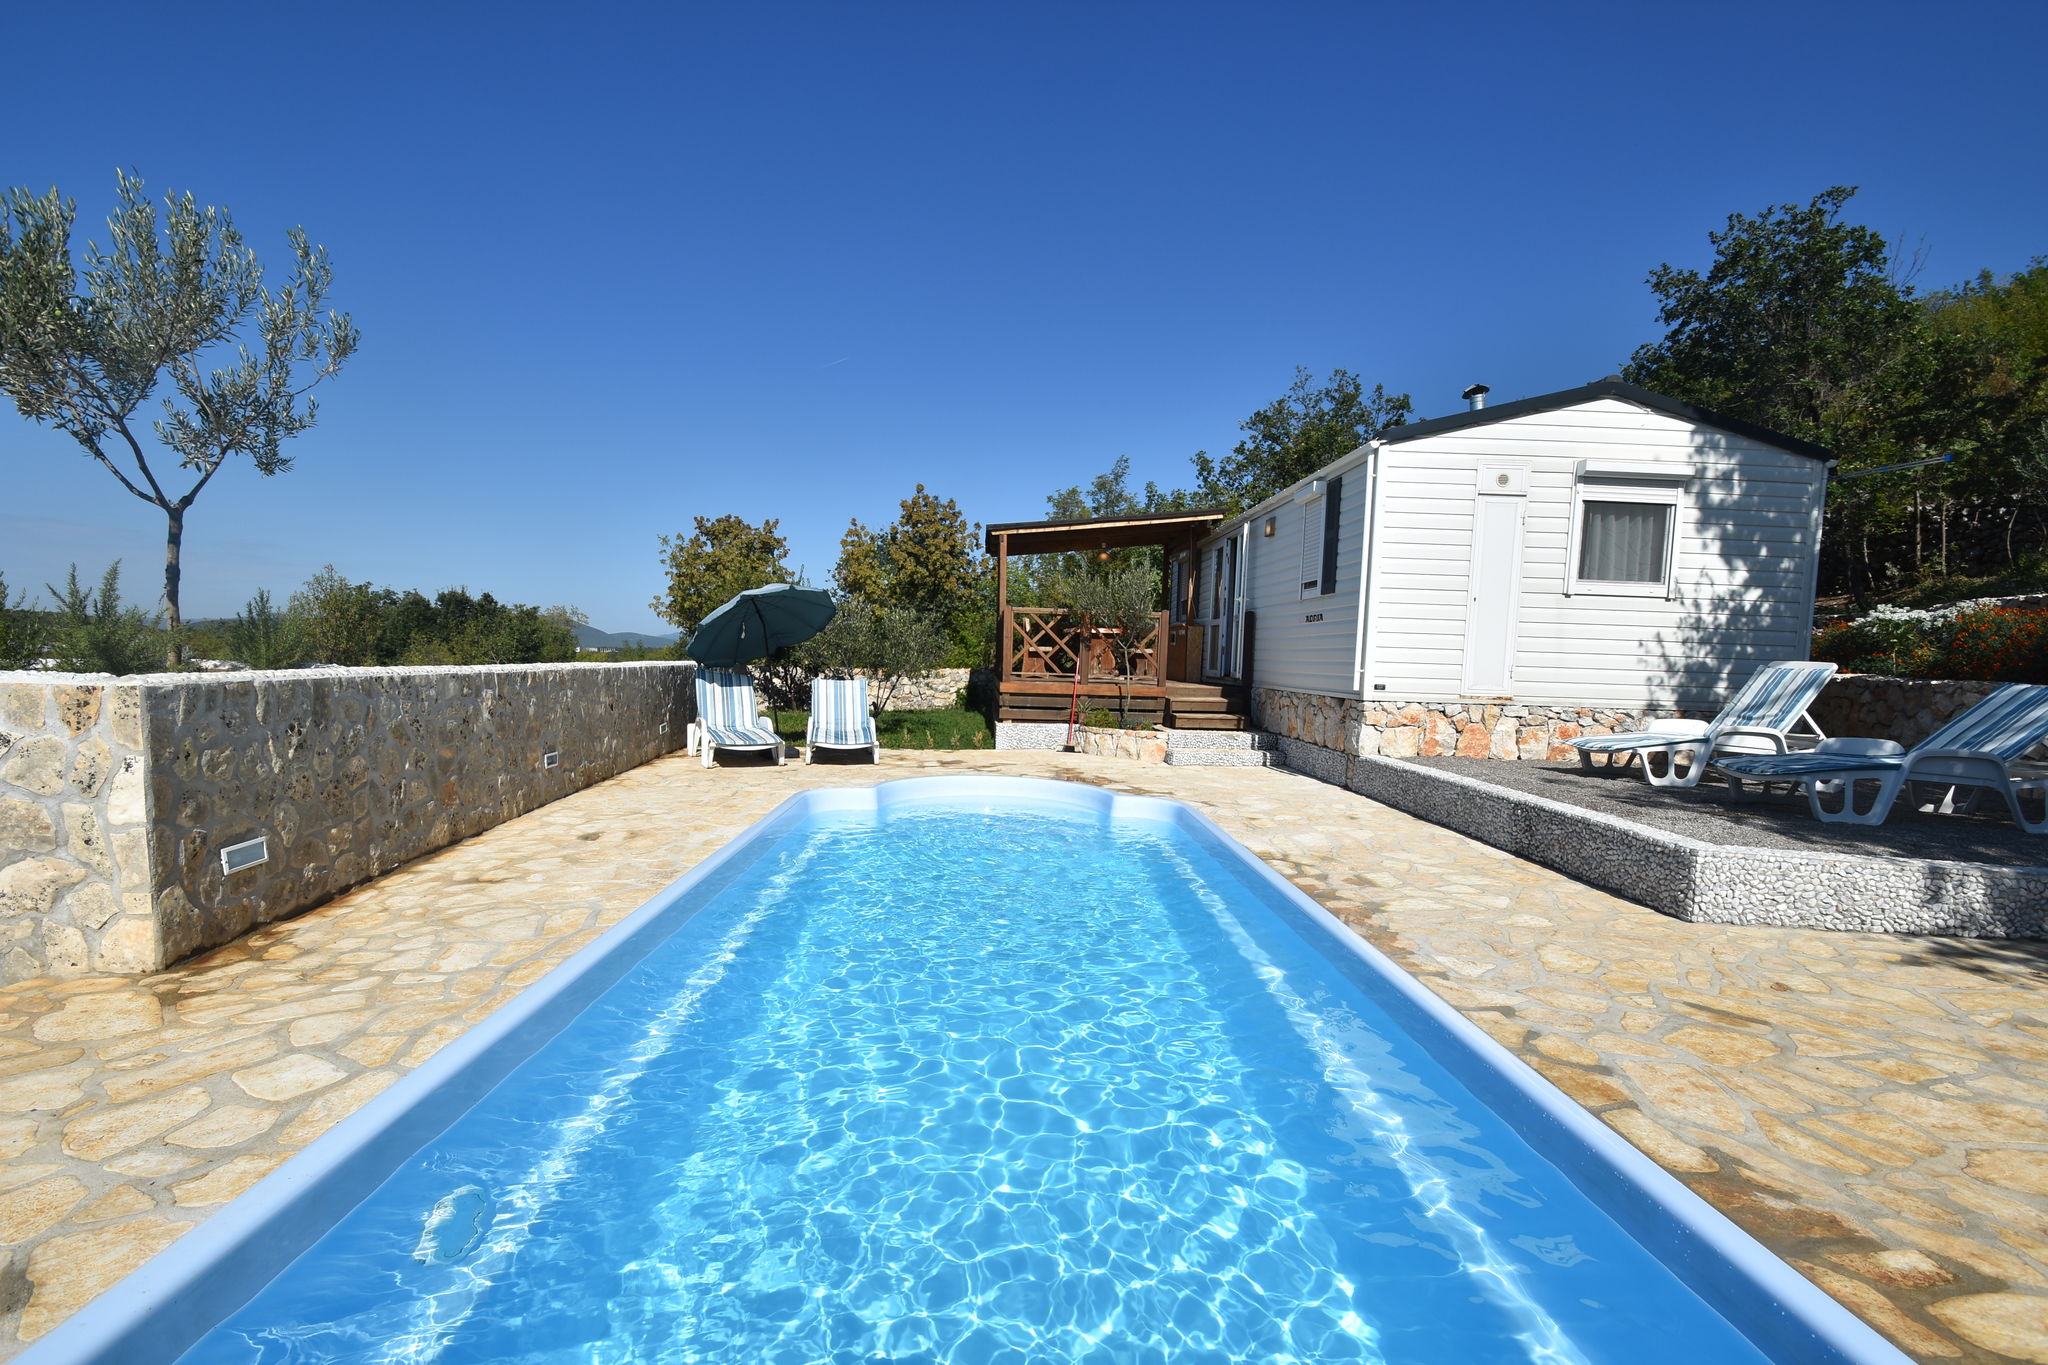 Knus vakantiehuis met privé zwembad, schitterend uitzicht en rustige ligging